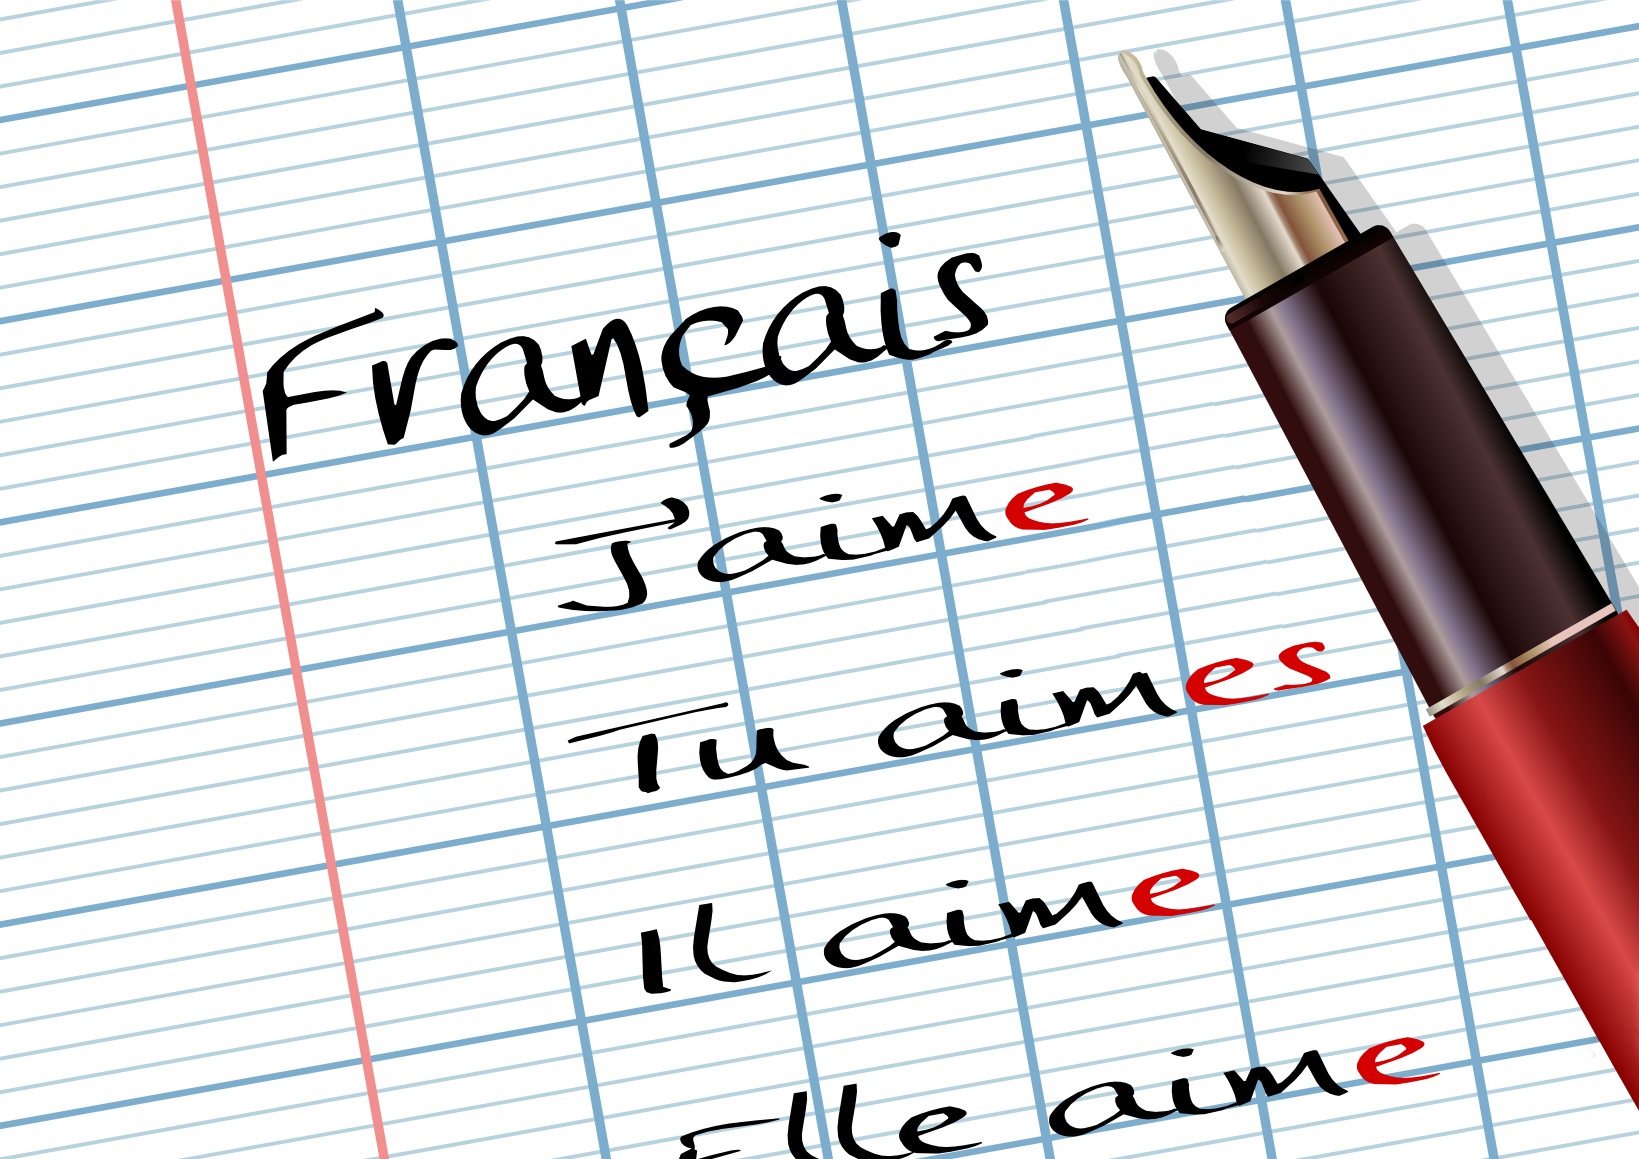 Урок 4 французского языка. Урок французского языка. Французский язык в картинках. Школьные уроки на французском языке. Я изучаю французский язык.